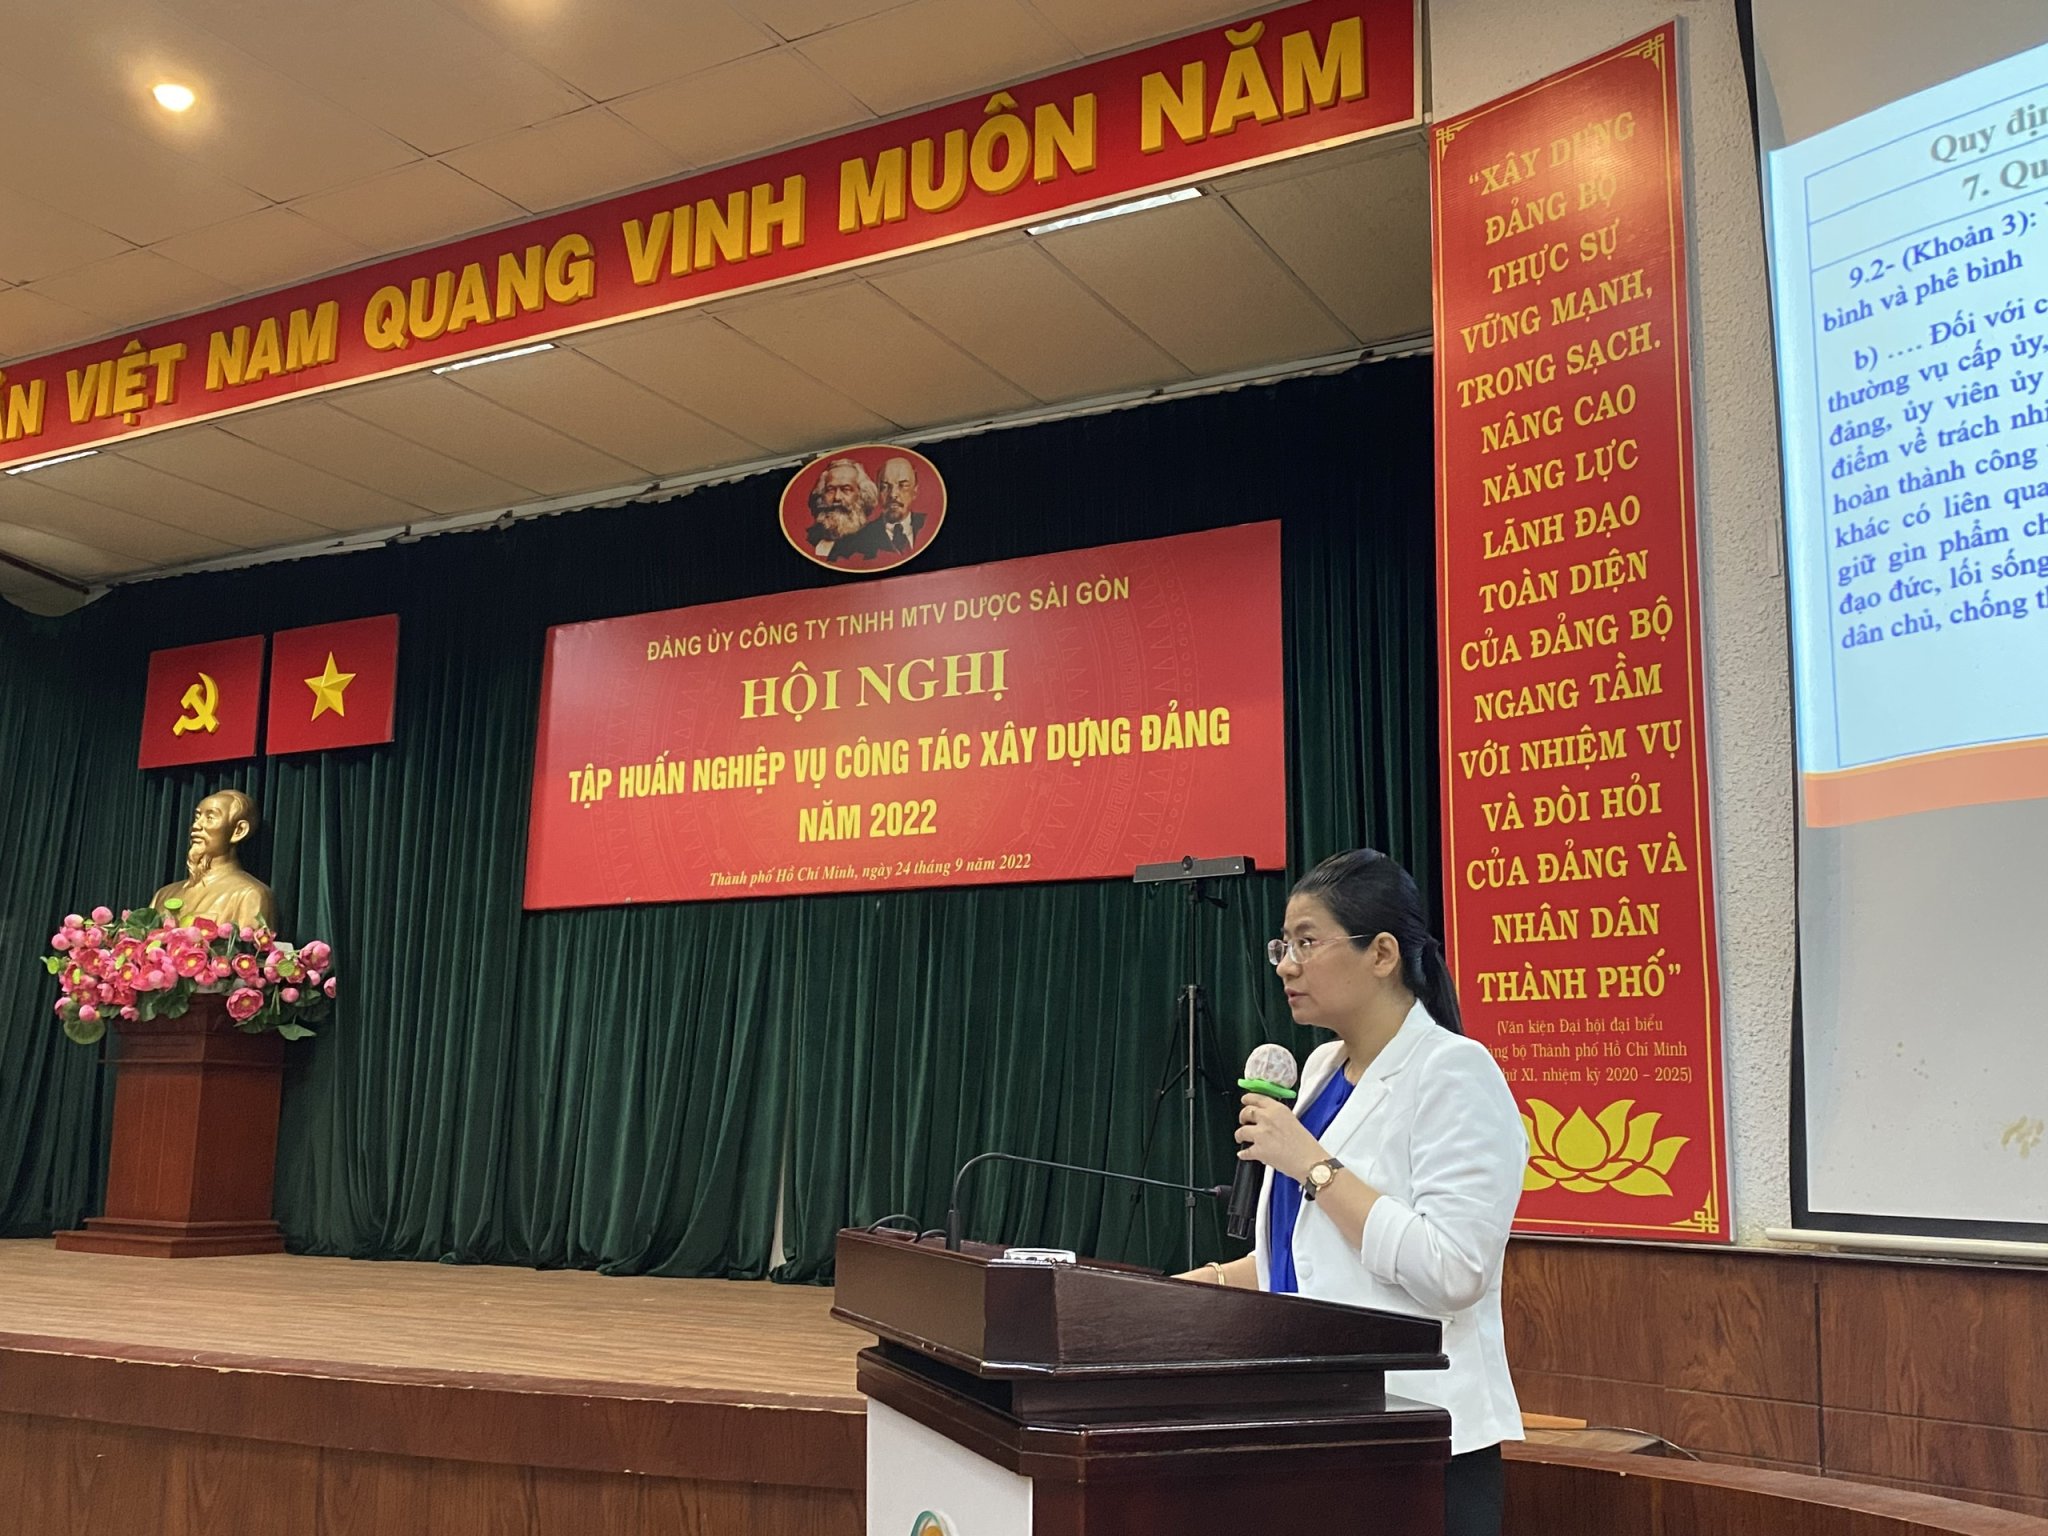 Đồng chí Bùi Thị Ngọc Hà, Trưởng phòng Tổ chức - Đảng viên Ban Tổ chức Thành ủy báo cáo tại hội nghị